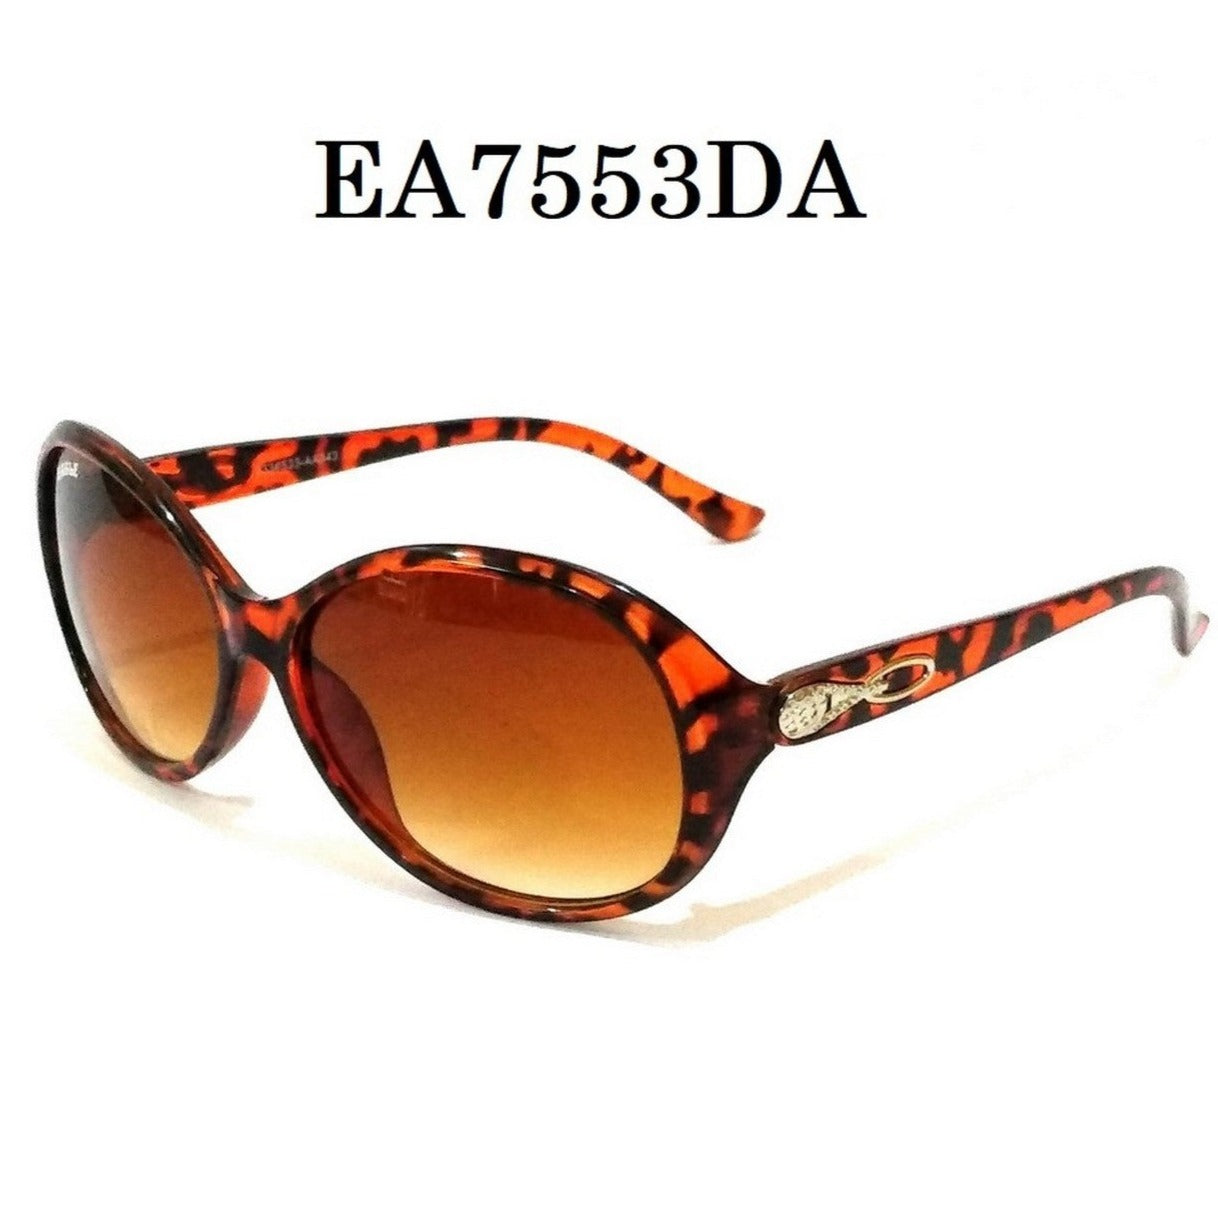 Leopard DA Color Sunglasses for Women EA7553DA - Glasses India Online